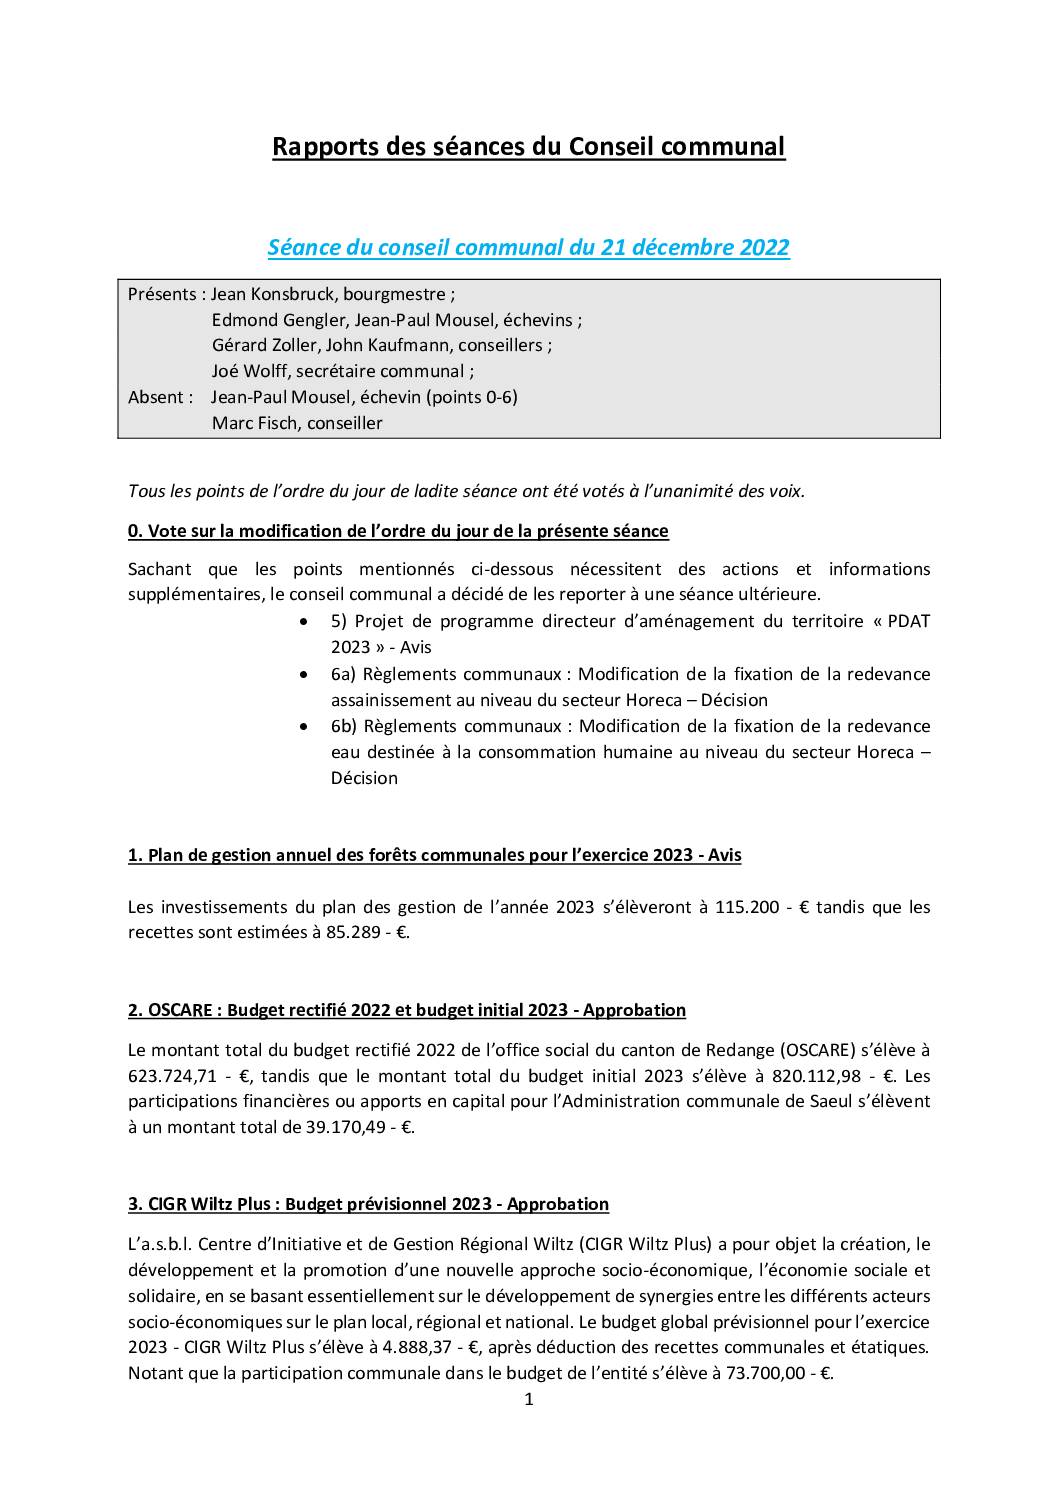 Rapports des séances du conseil communal - Gemengerotsrapporten (21.12.2022 + 18.01.2023)